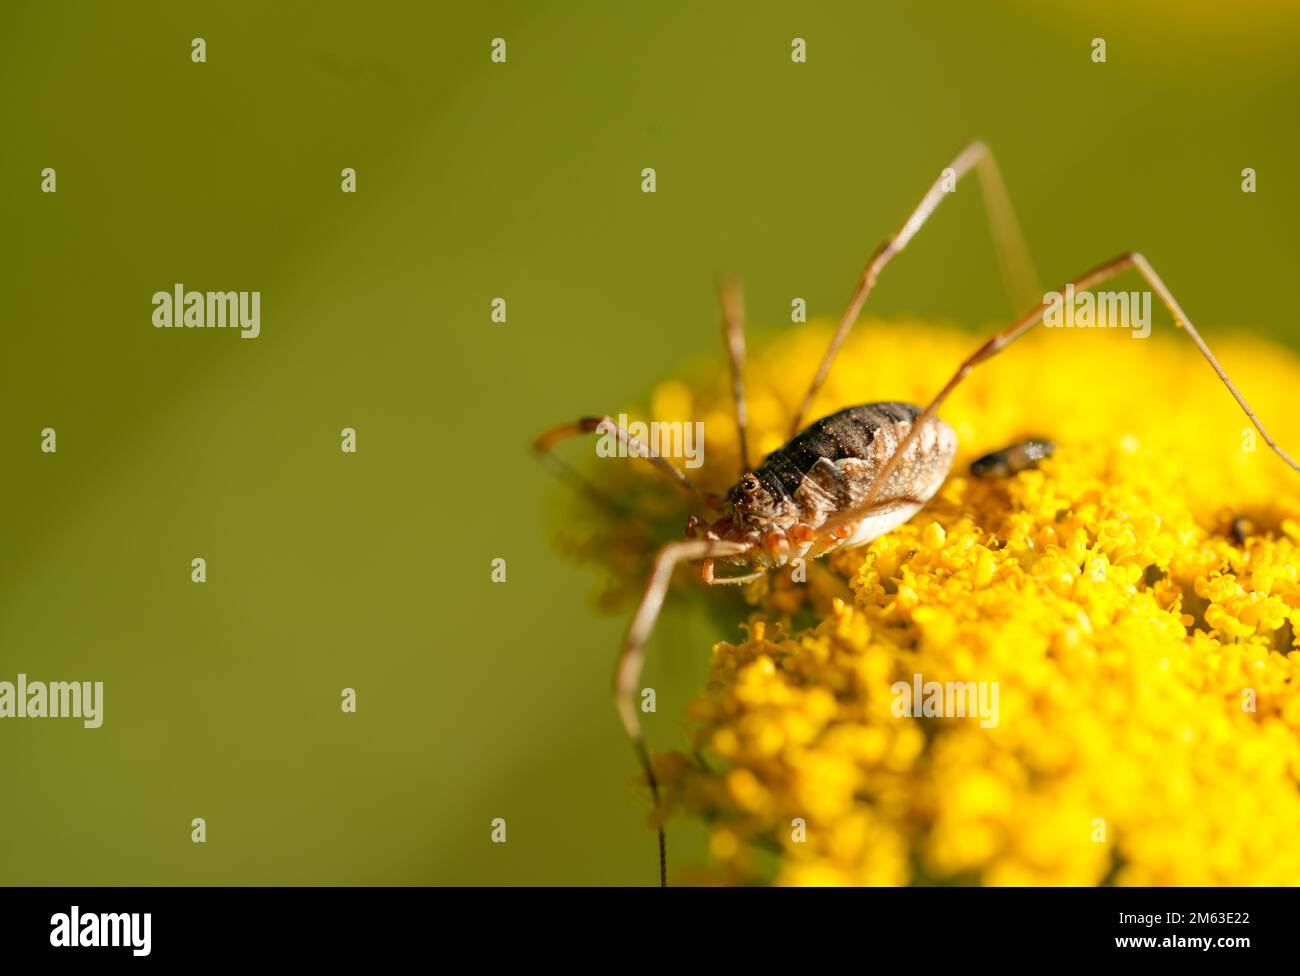 Erntemaschine auf der gelben Blume der Schafgarbe. Insektennahaufnahme vor grünem Hintergrund. Spinne mit langen, dünnen Beinen. Opilione. Stockfoto